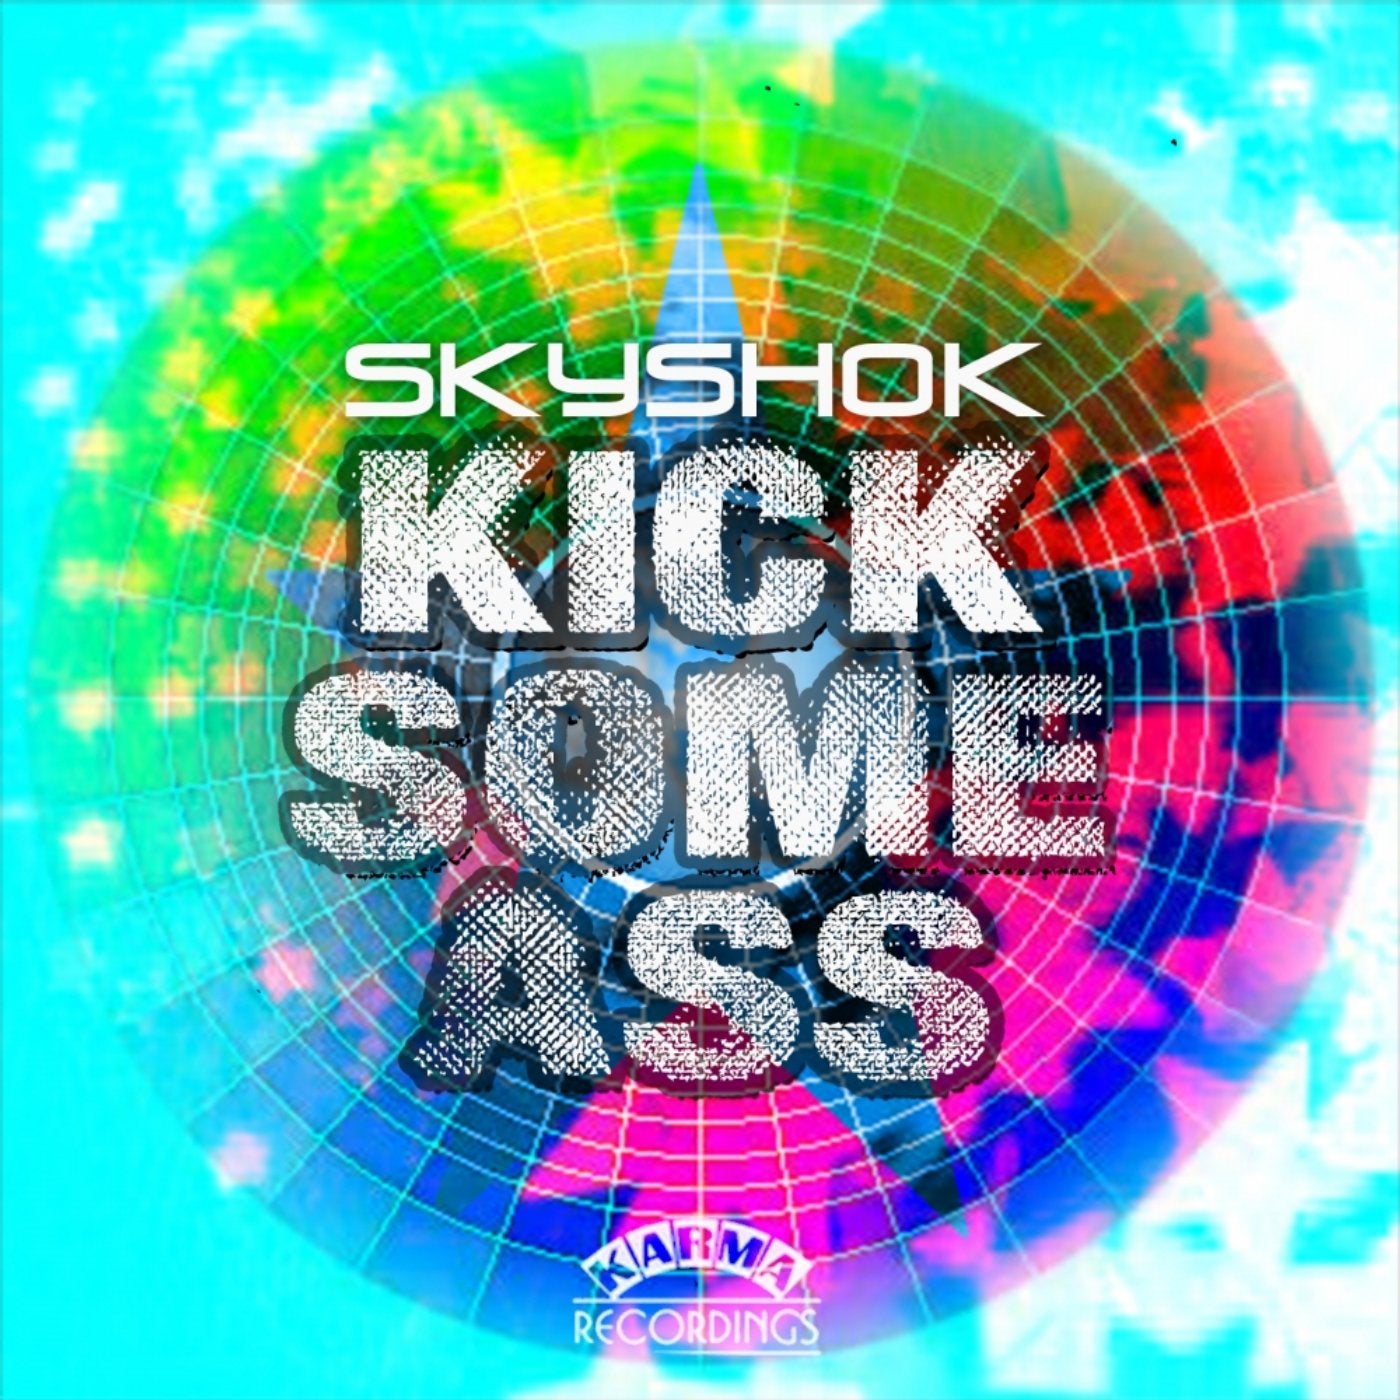 Kick Some Ass